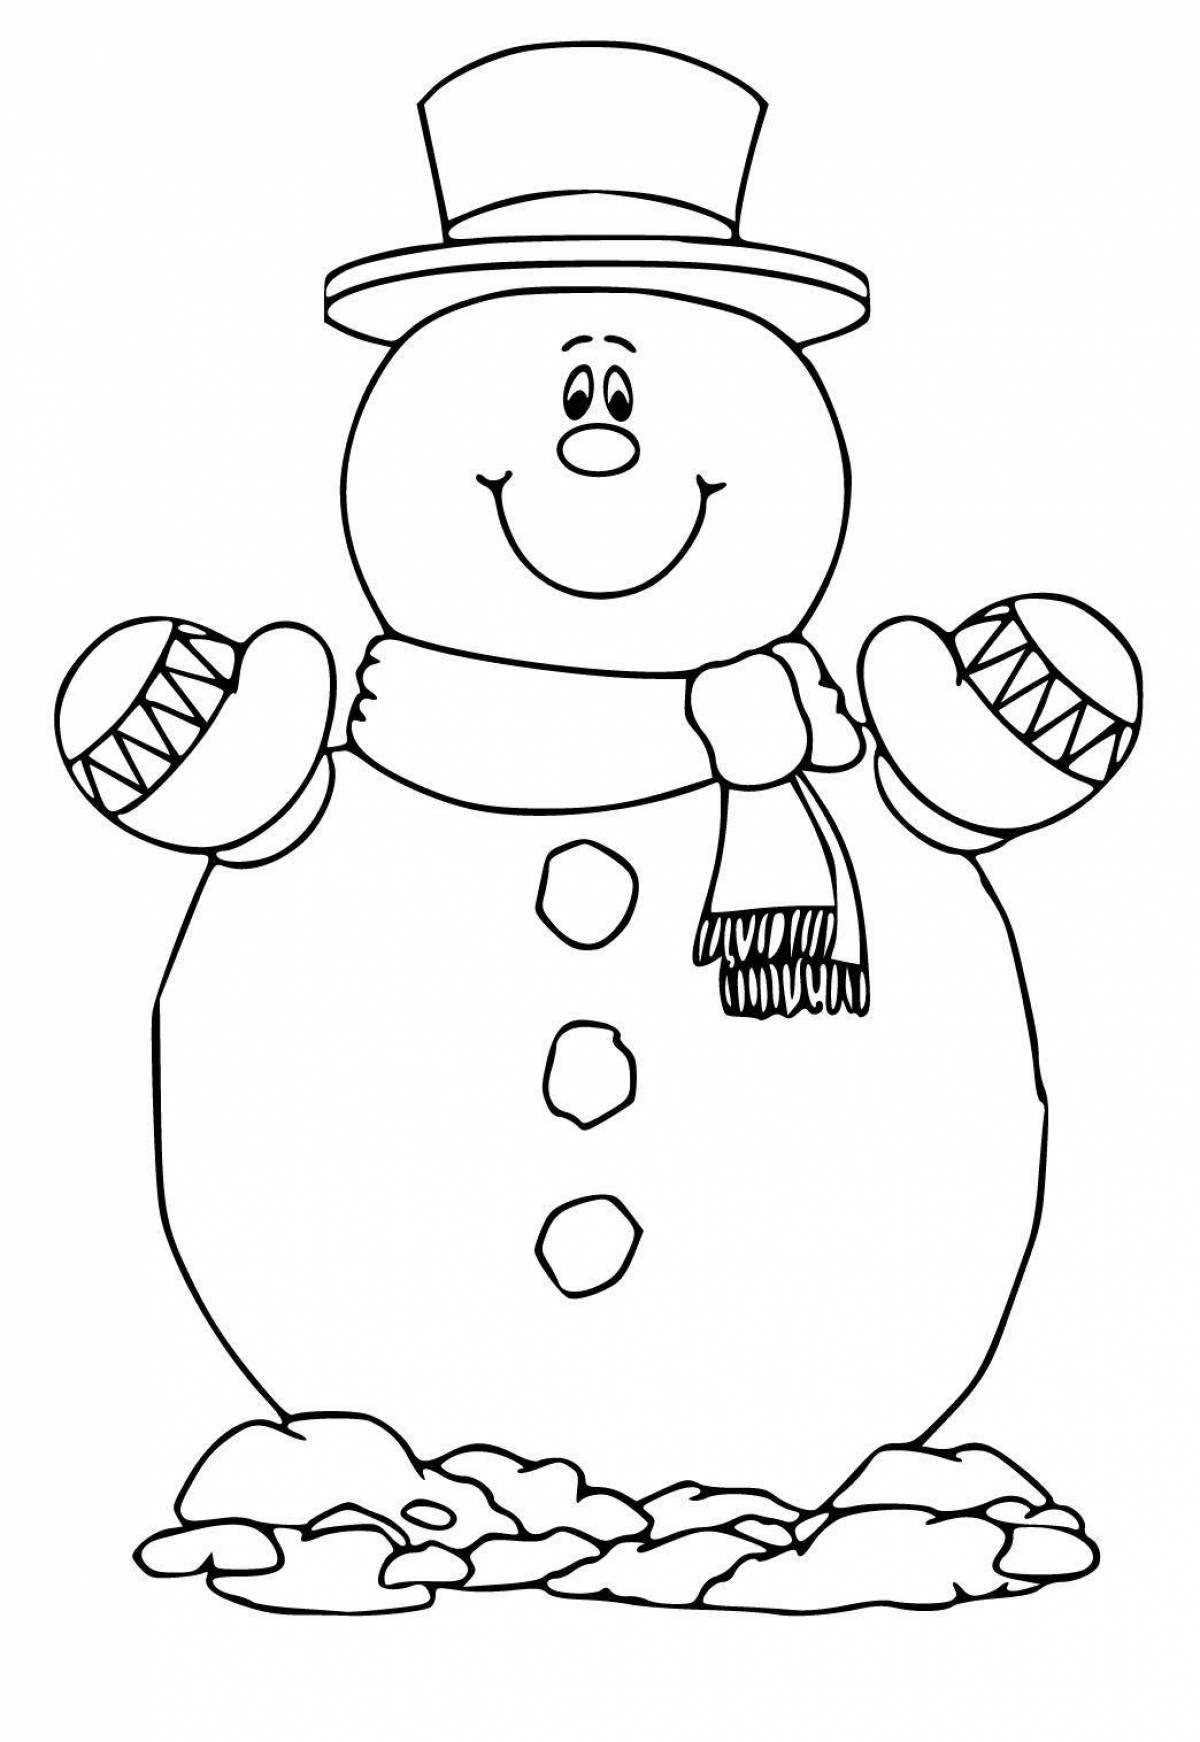 Веселая раскраска снеговик для детей 5 6